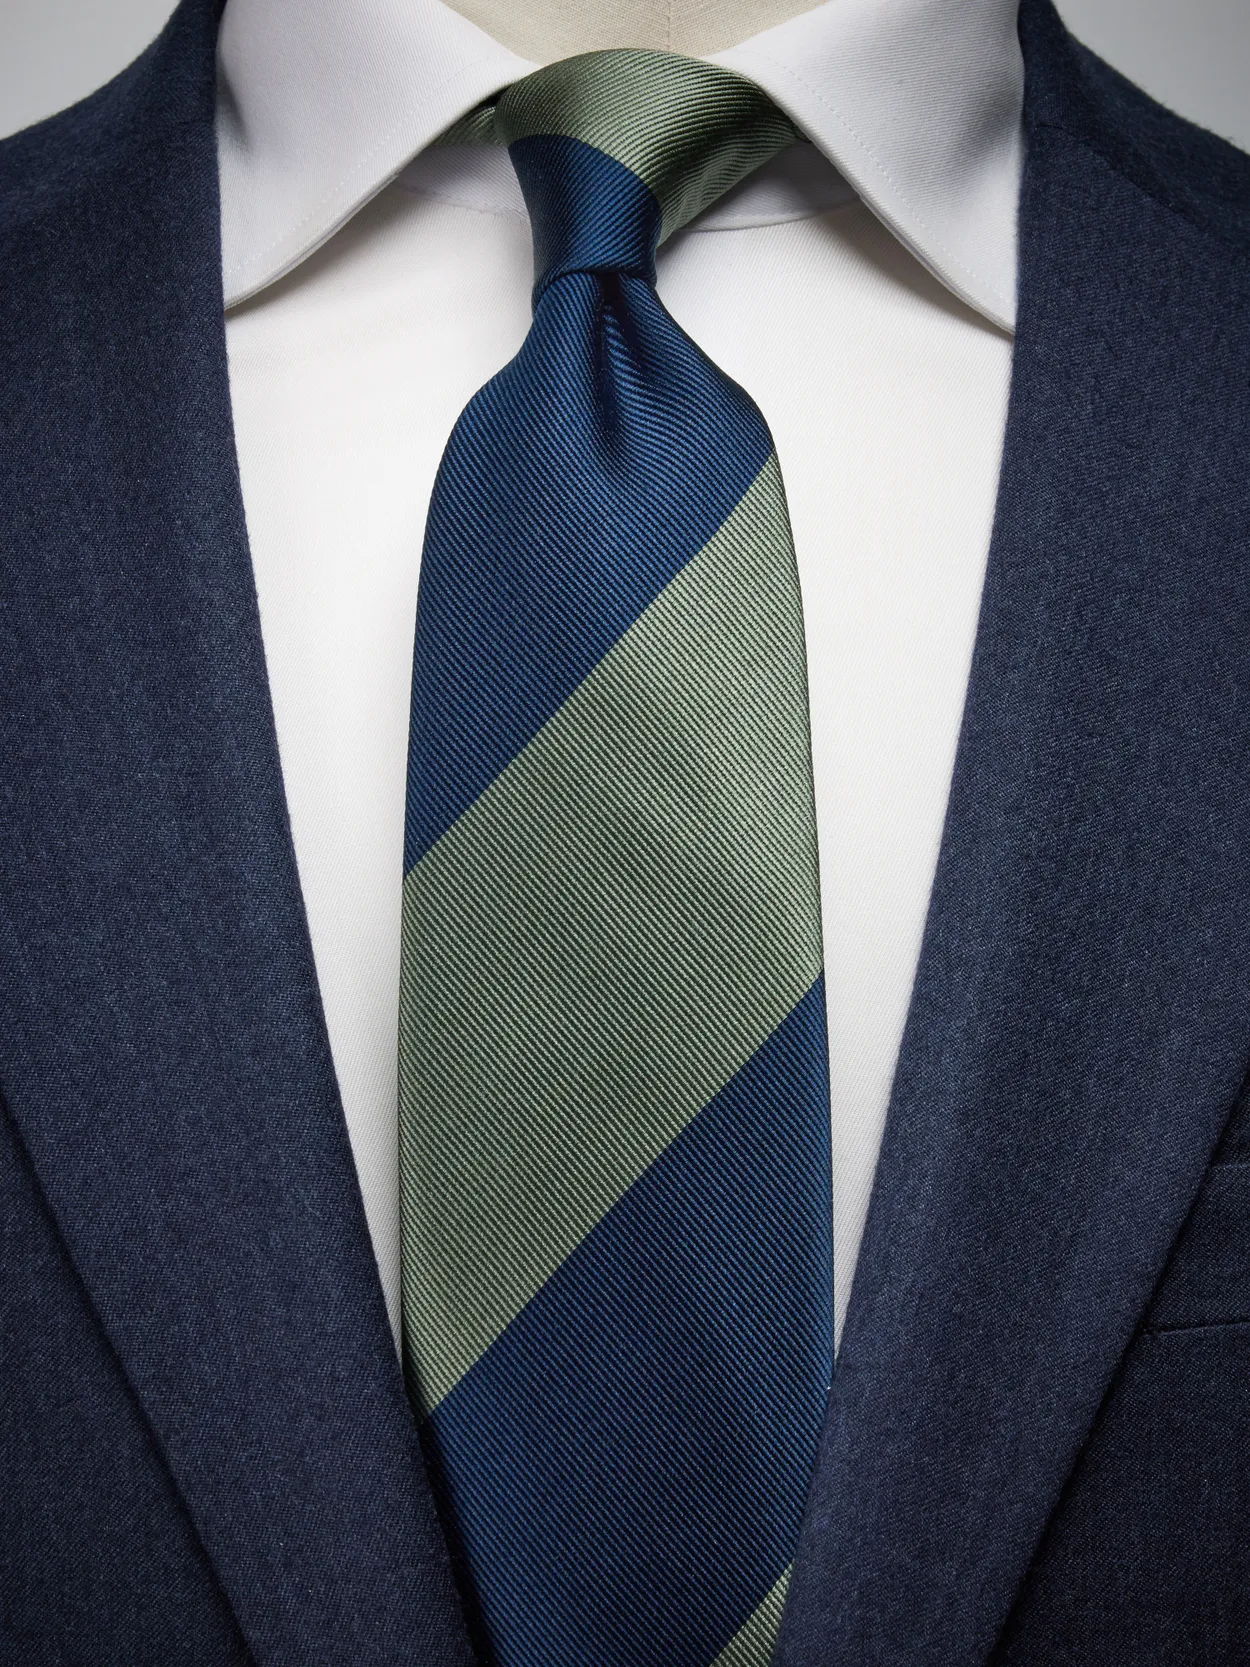 Green & Blue Tie Stripe